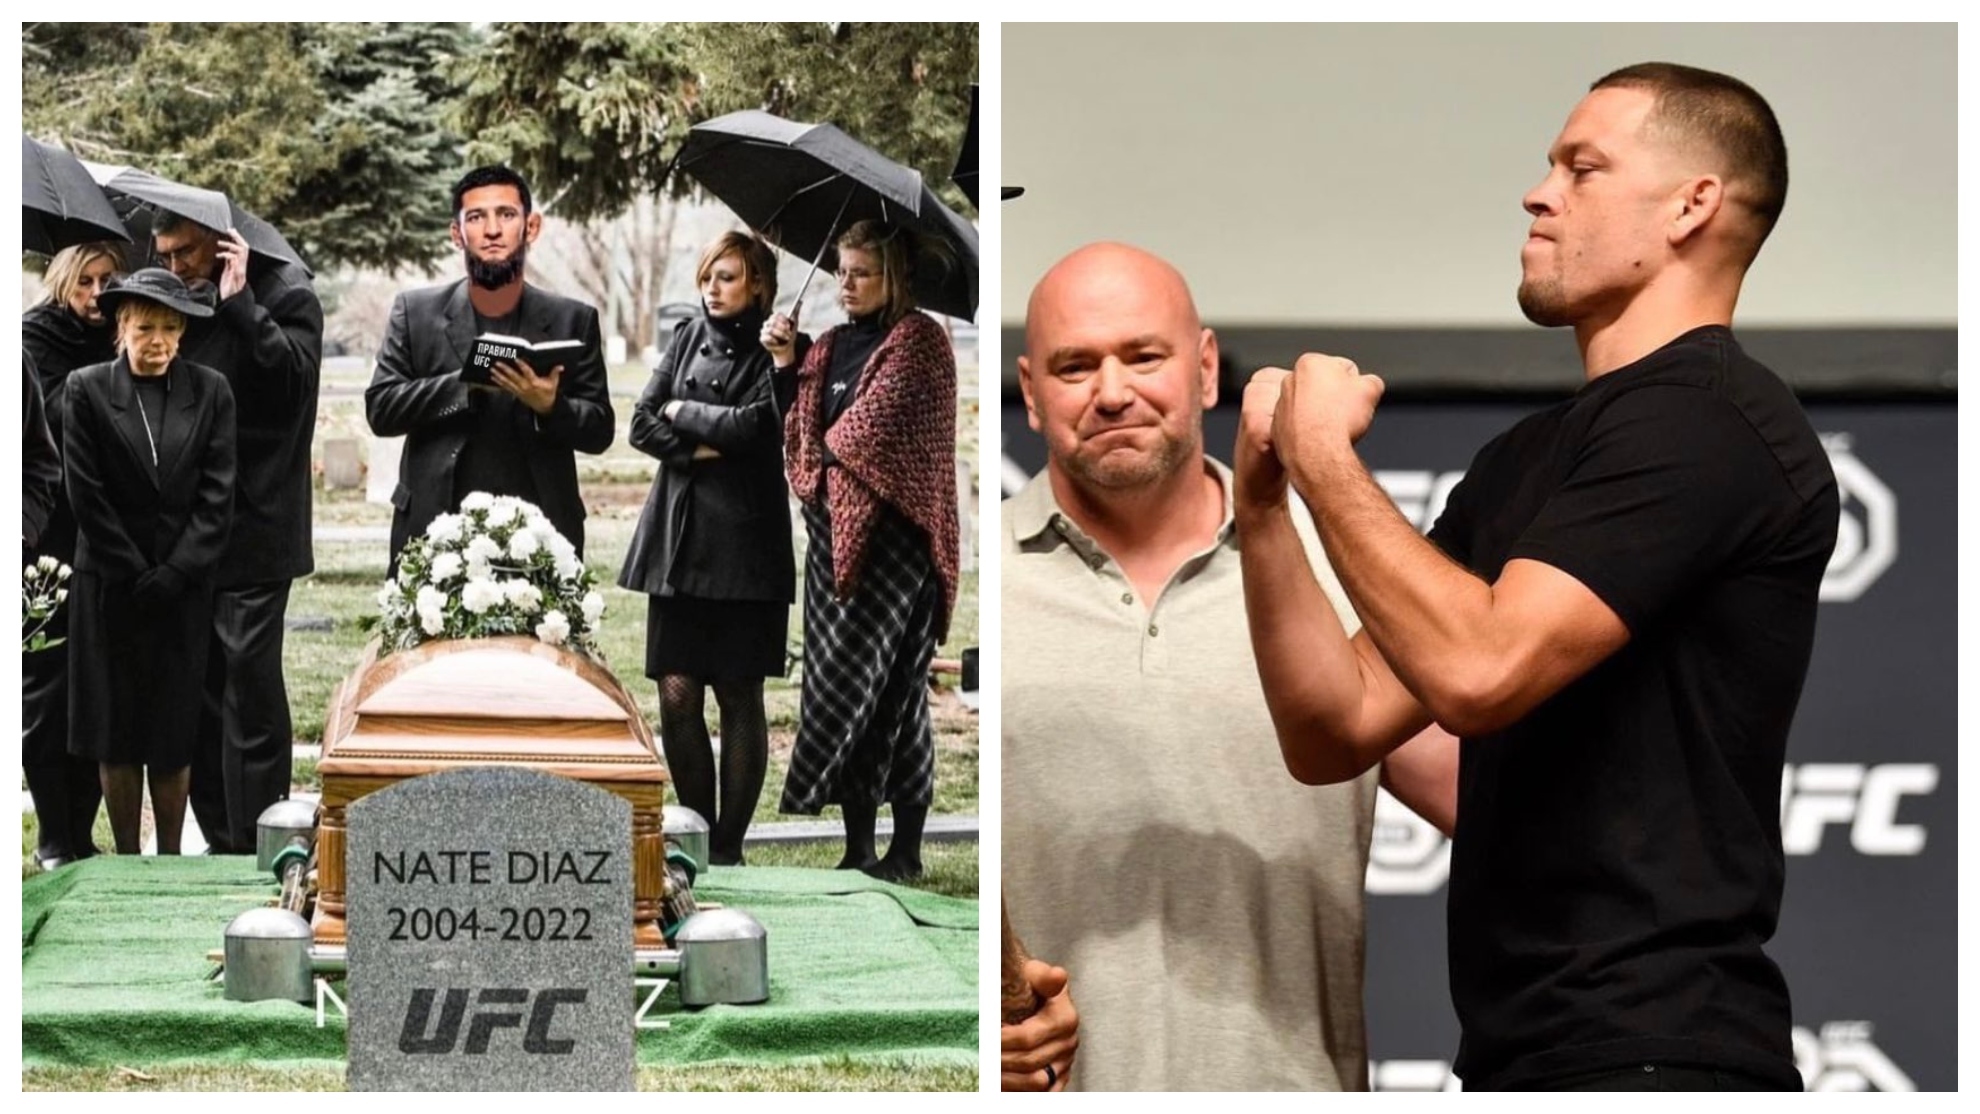 Izda: un meme de Chimaev y la lápida que anuncia el final de la carrera de Díaz en UFC. Drcha: Dana White y Nate Díaz.